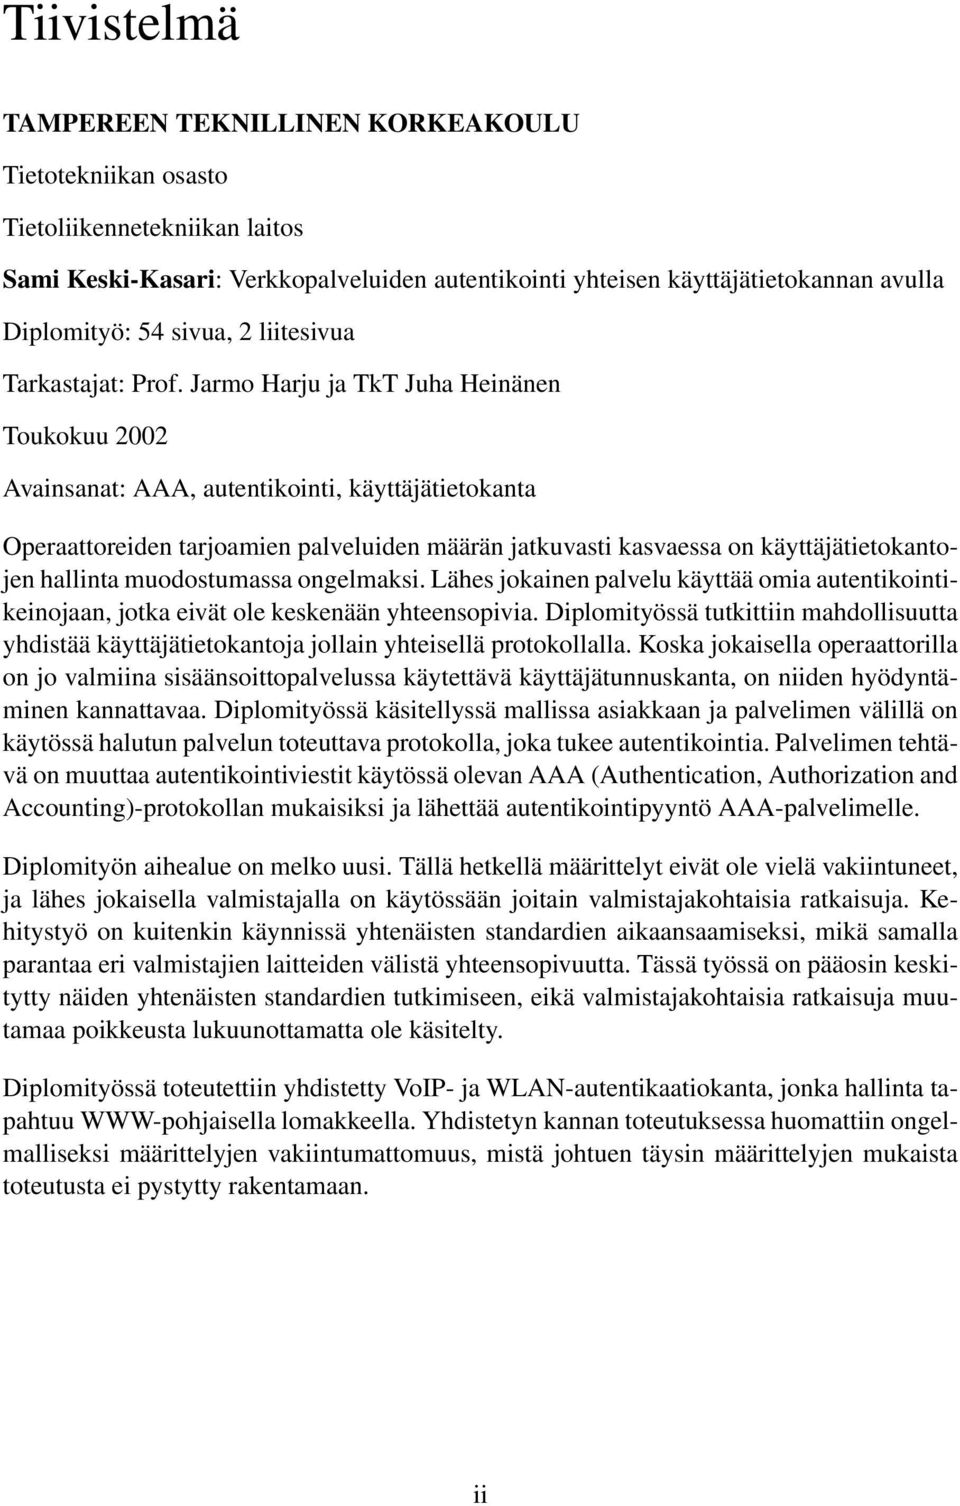 Jarmo Harju ja TkT Juha Heinänen Toukokuu 2002 Avainsanat: AAA, autentikointi, käyttäjätietokanta Operaattoreiden tarjoamien palveluiden määrän jatkuvasti kasvaessa on käyttäjätietokantojen hallinta